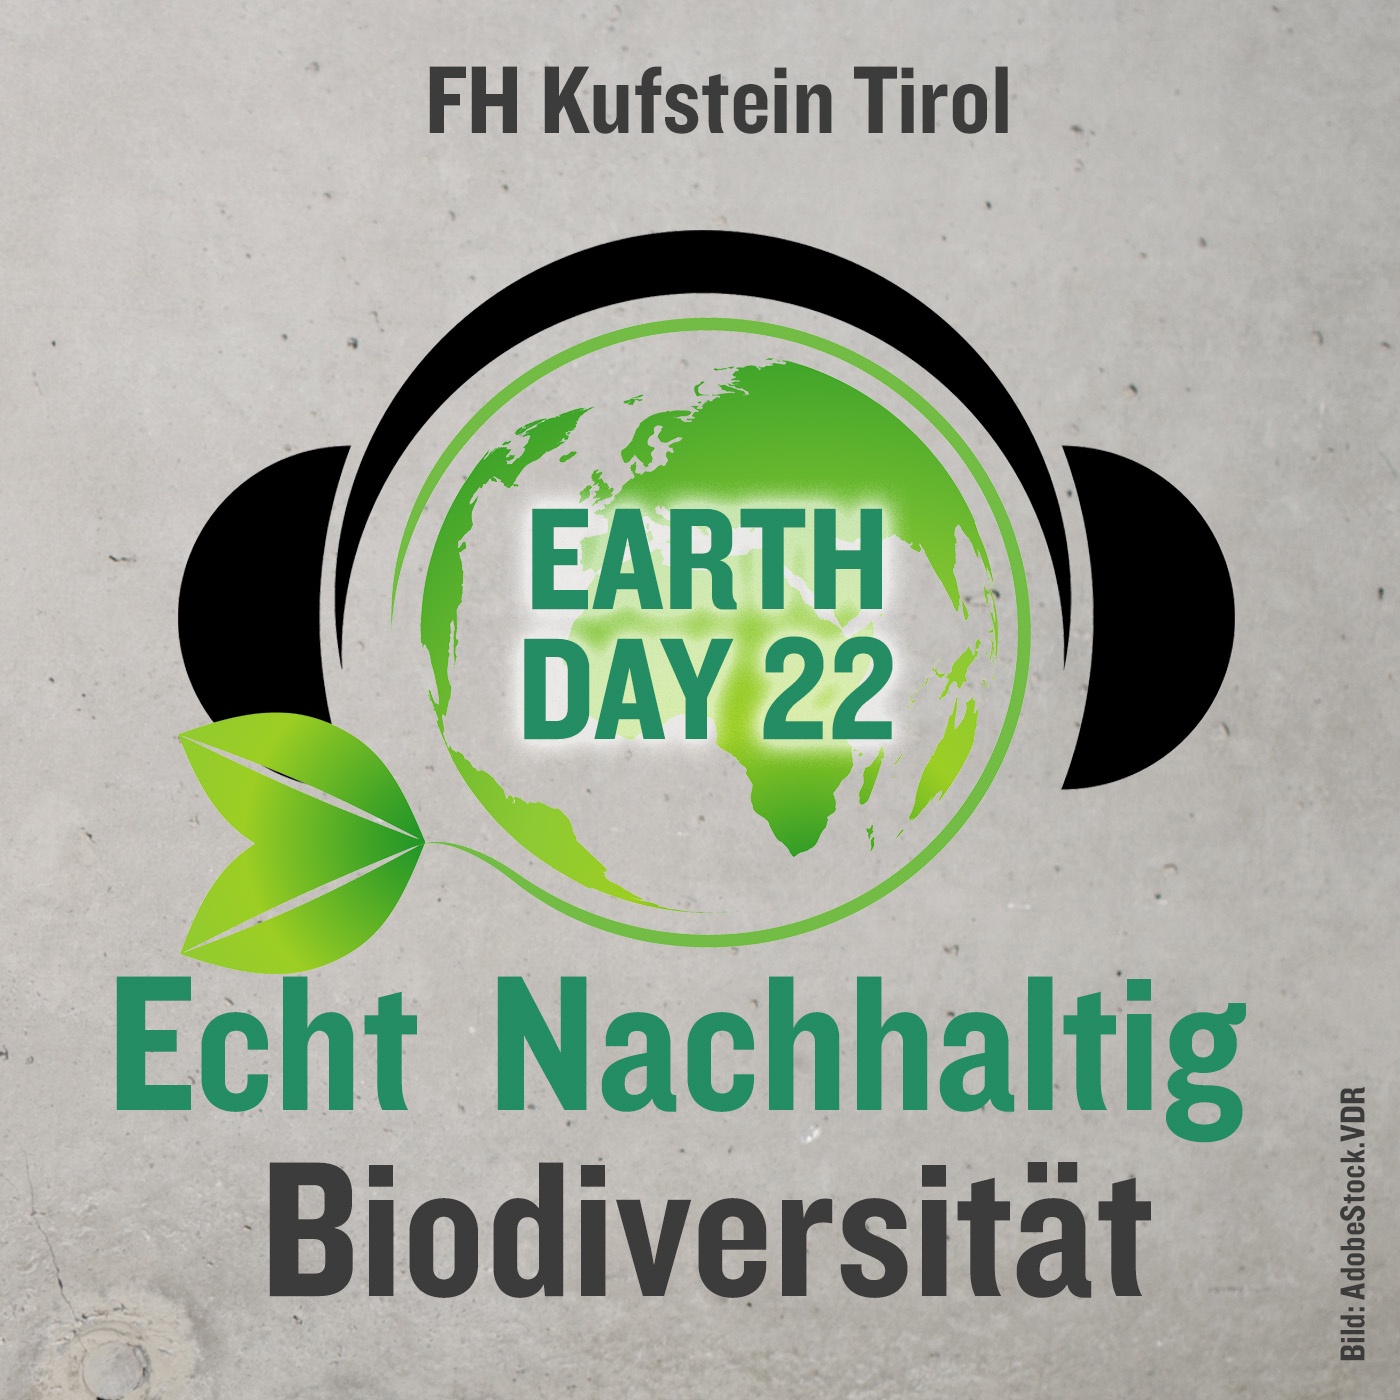 Echt Nachhaltig: EarthDay 22 - Biodiversität